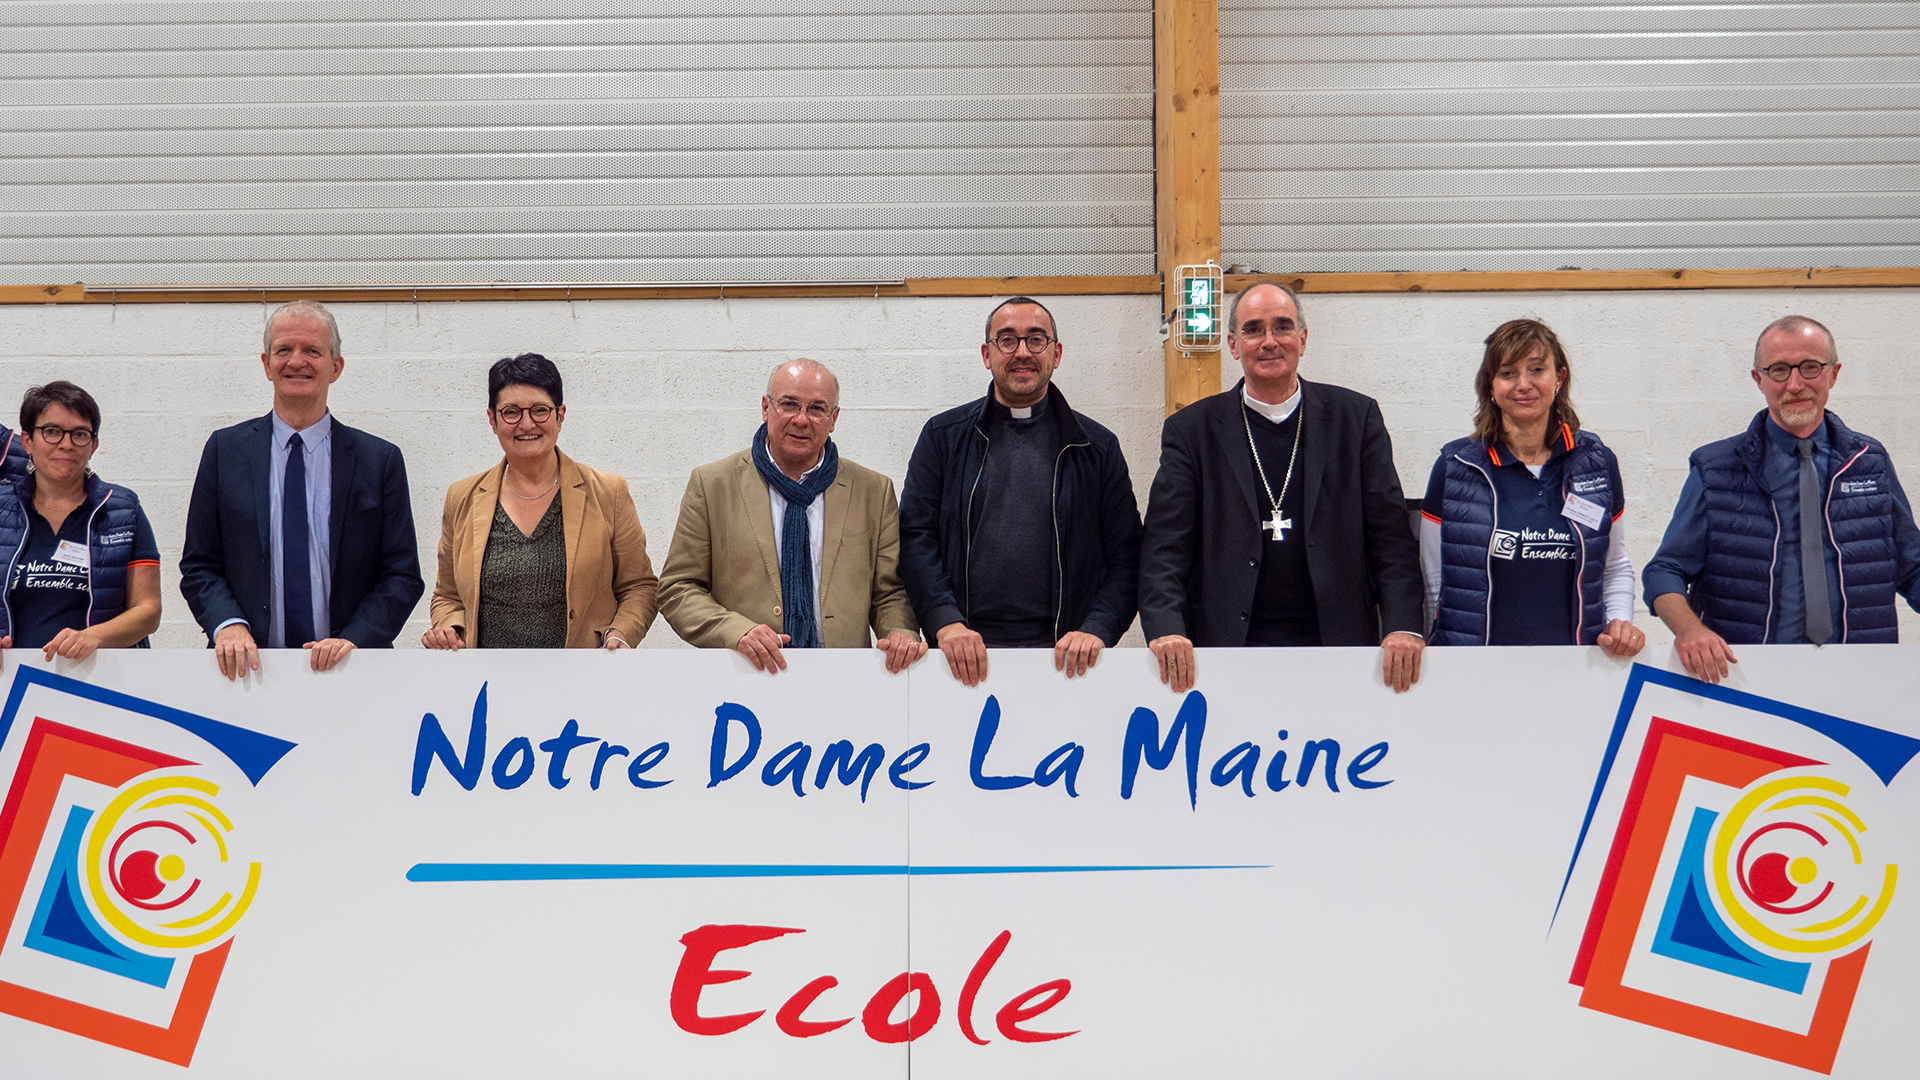 L’école Notre Dame et le collège de la Maine d’Aigrefeuille sur Maine changent de nom